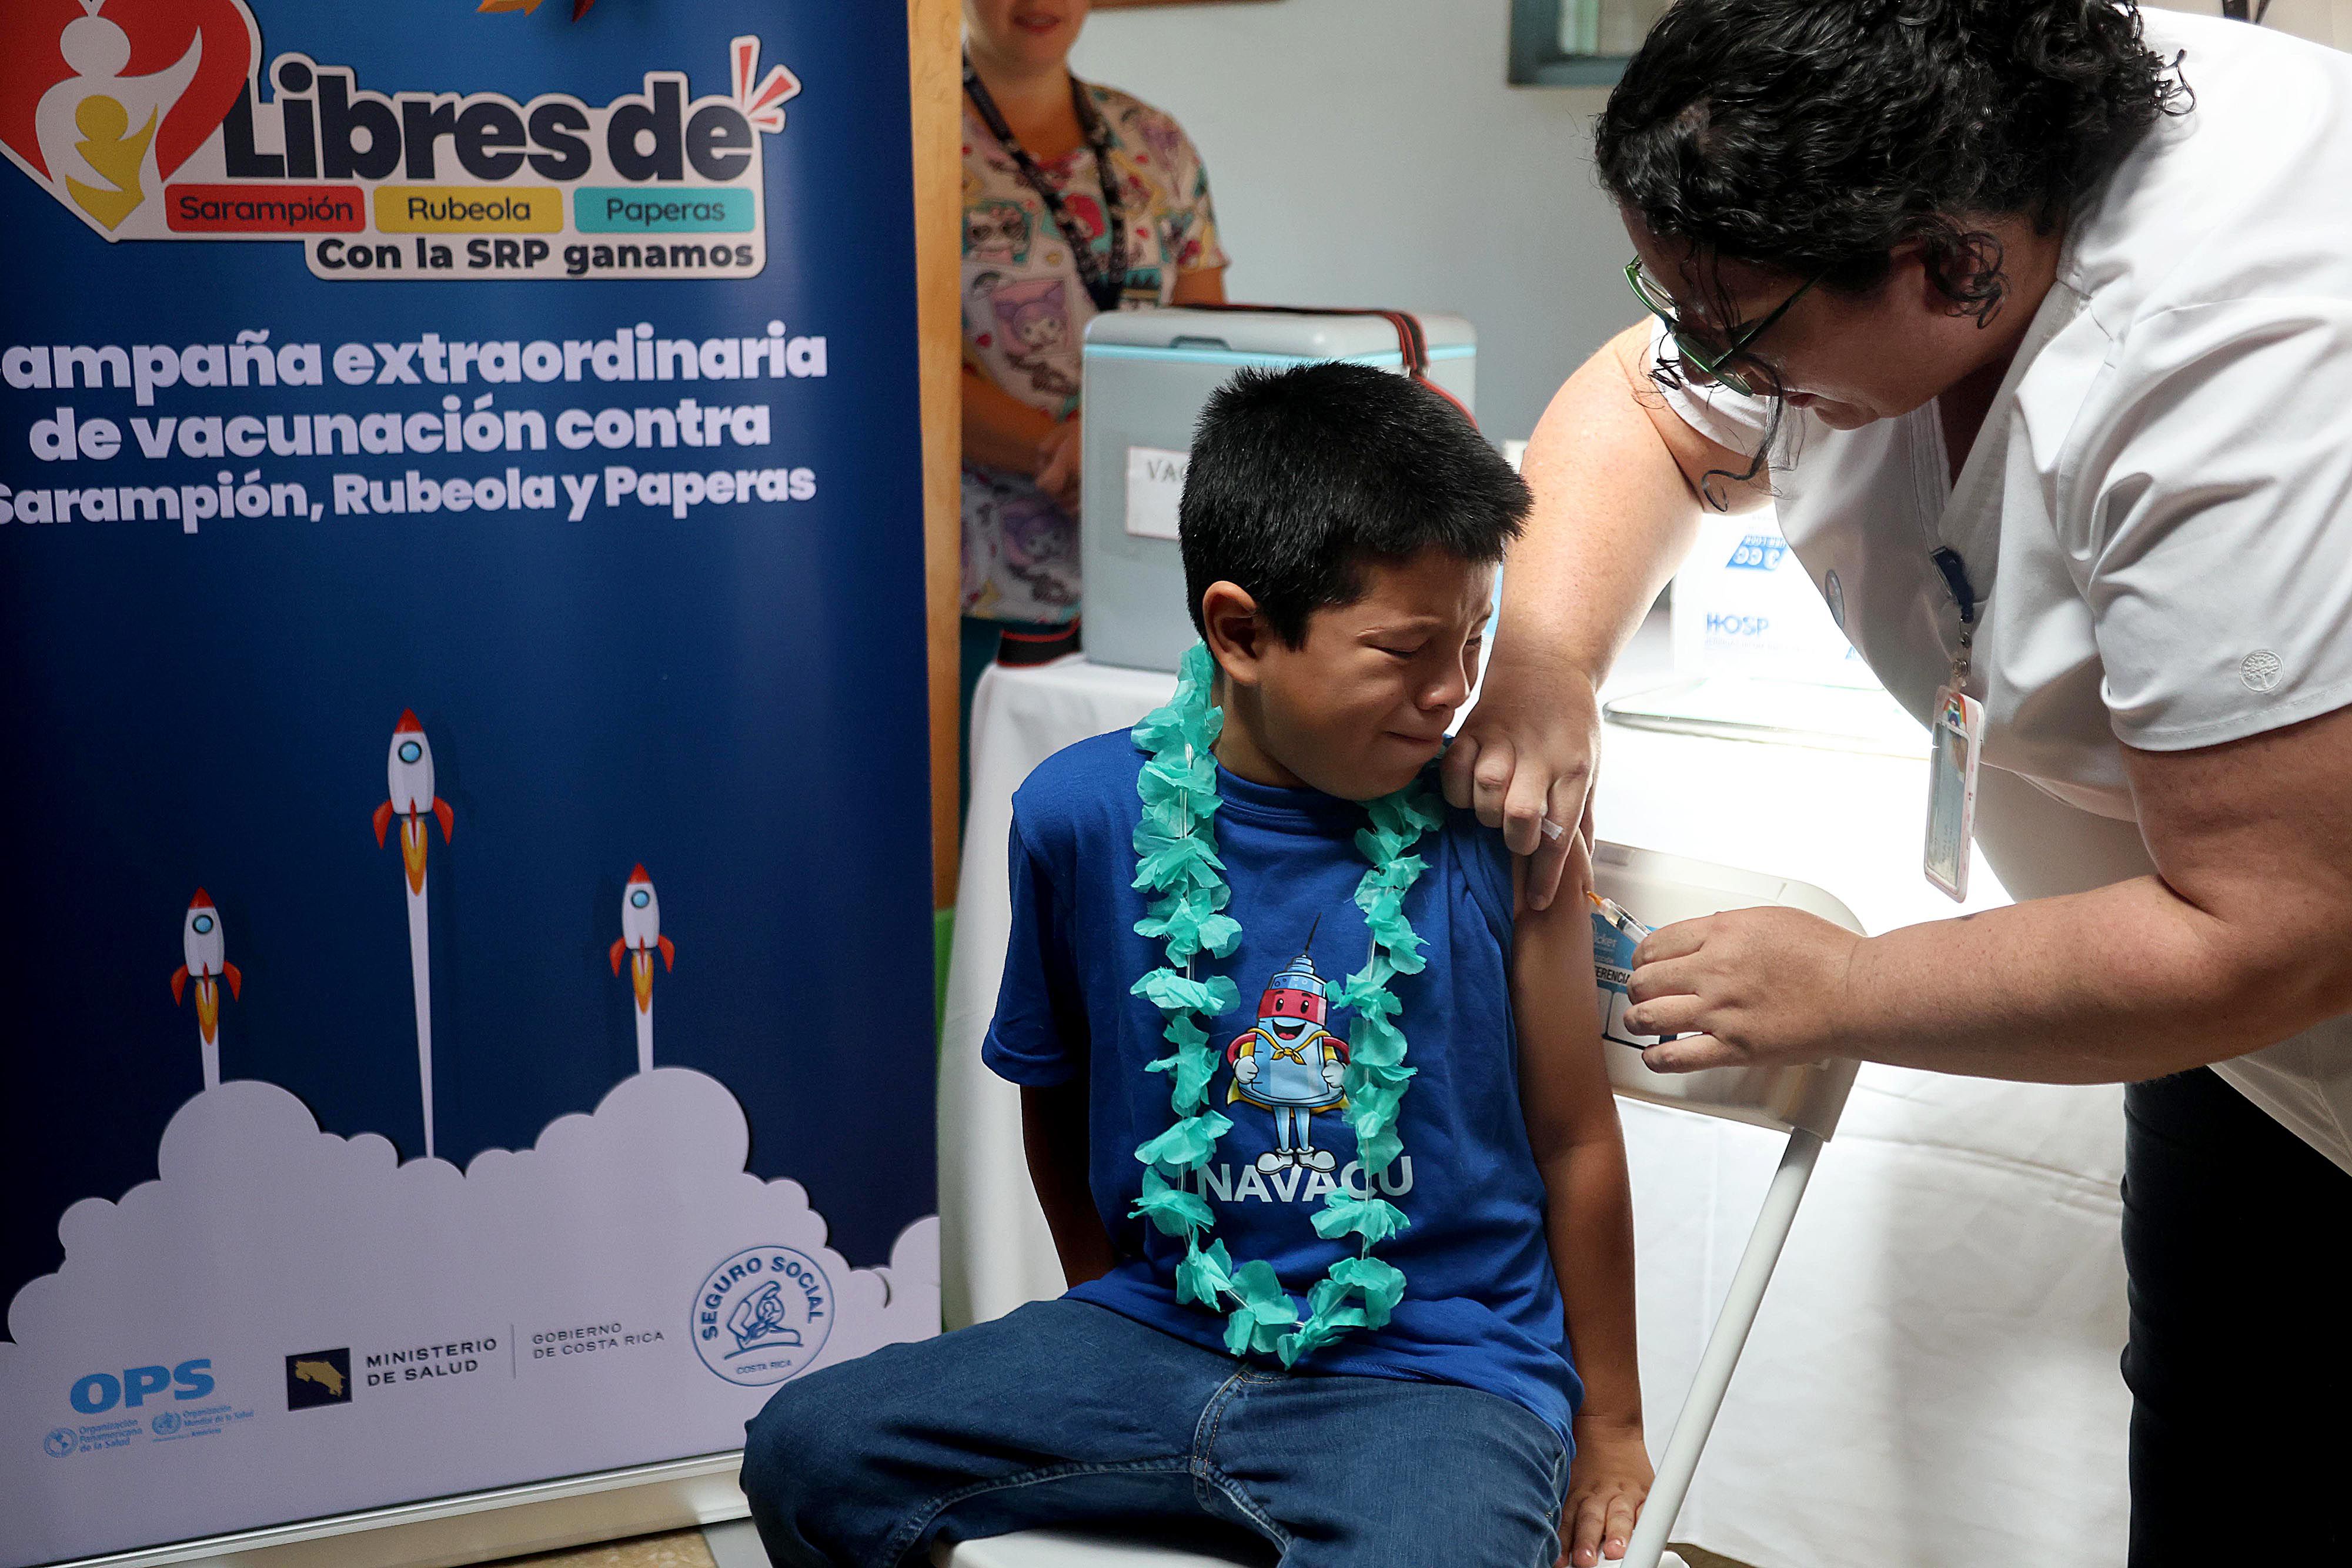 La jornada de vacunación extraordinaria contra sarampión (que incluye la protección contra rubéola y paperas), se inició en abril. Benyamin Brenes Calderón, de siete años, fue uno de los primeros en recibir la vacuna. Se la aplicó Amalia Piedra.